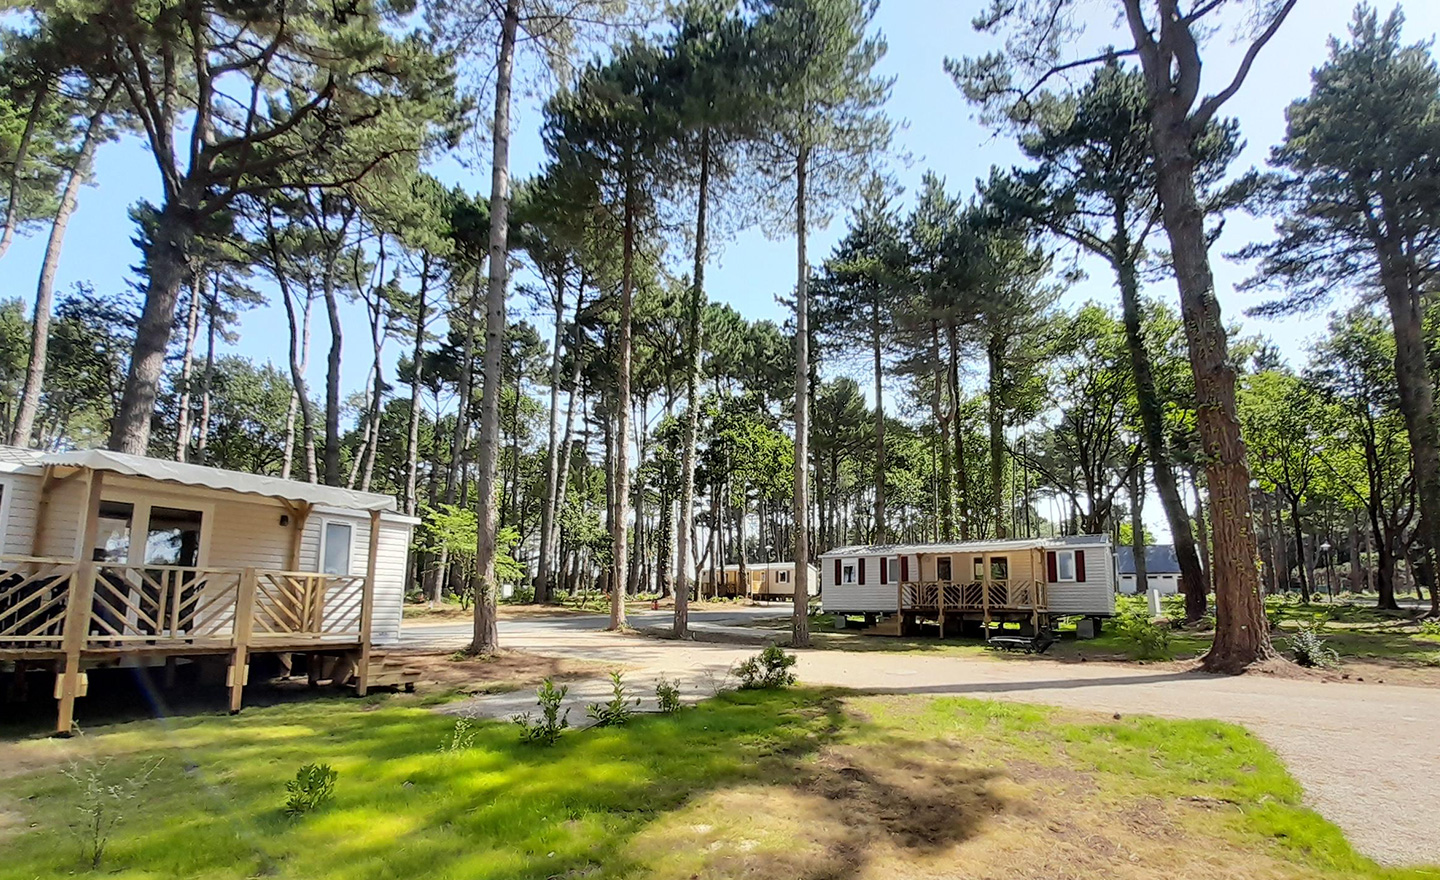 France - Atlantique Nord - Piriac sur Mer - Camping Le Bois de Bayadène 3*